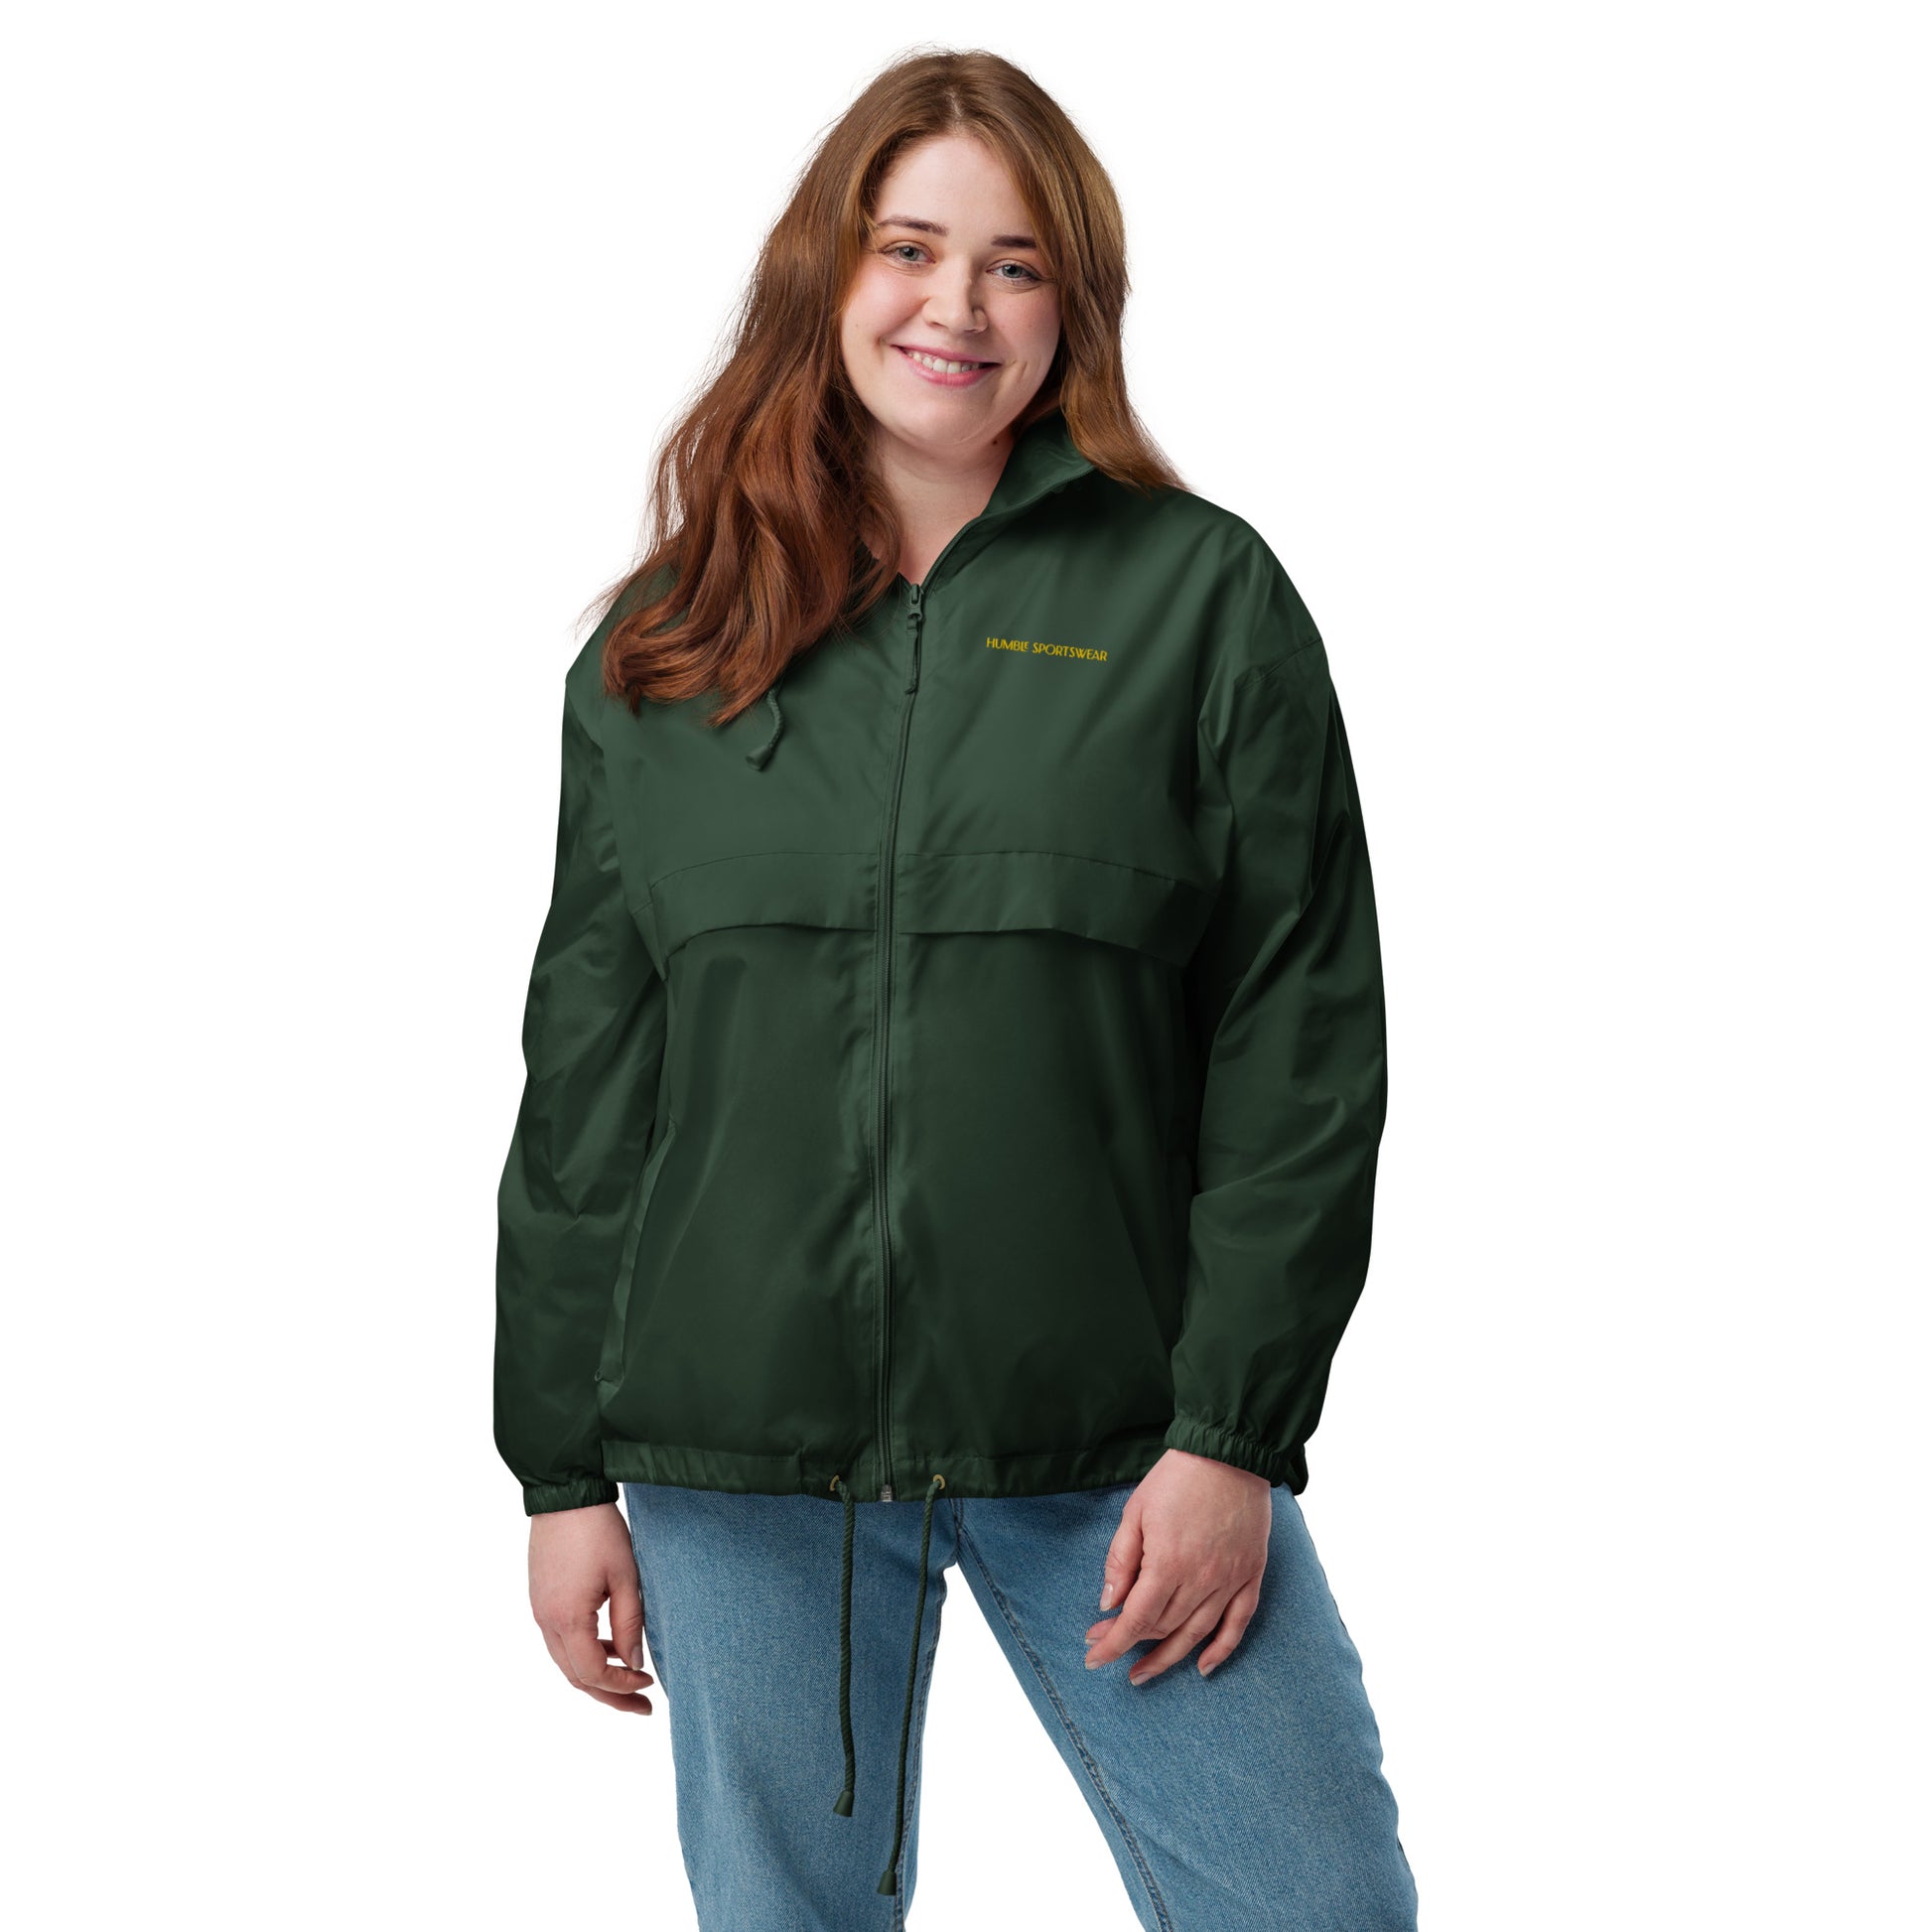 Vegan sportswear, Womens windbreaker jacket, women’s jackets, windbreaker jackets for women, waterproof jackets